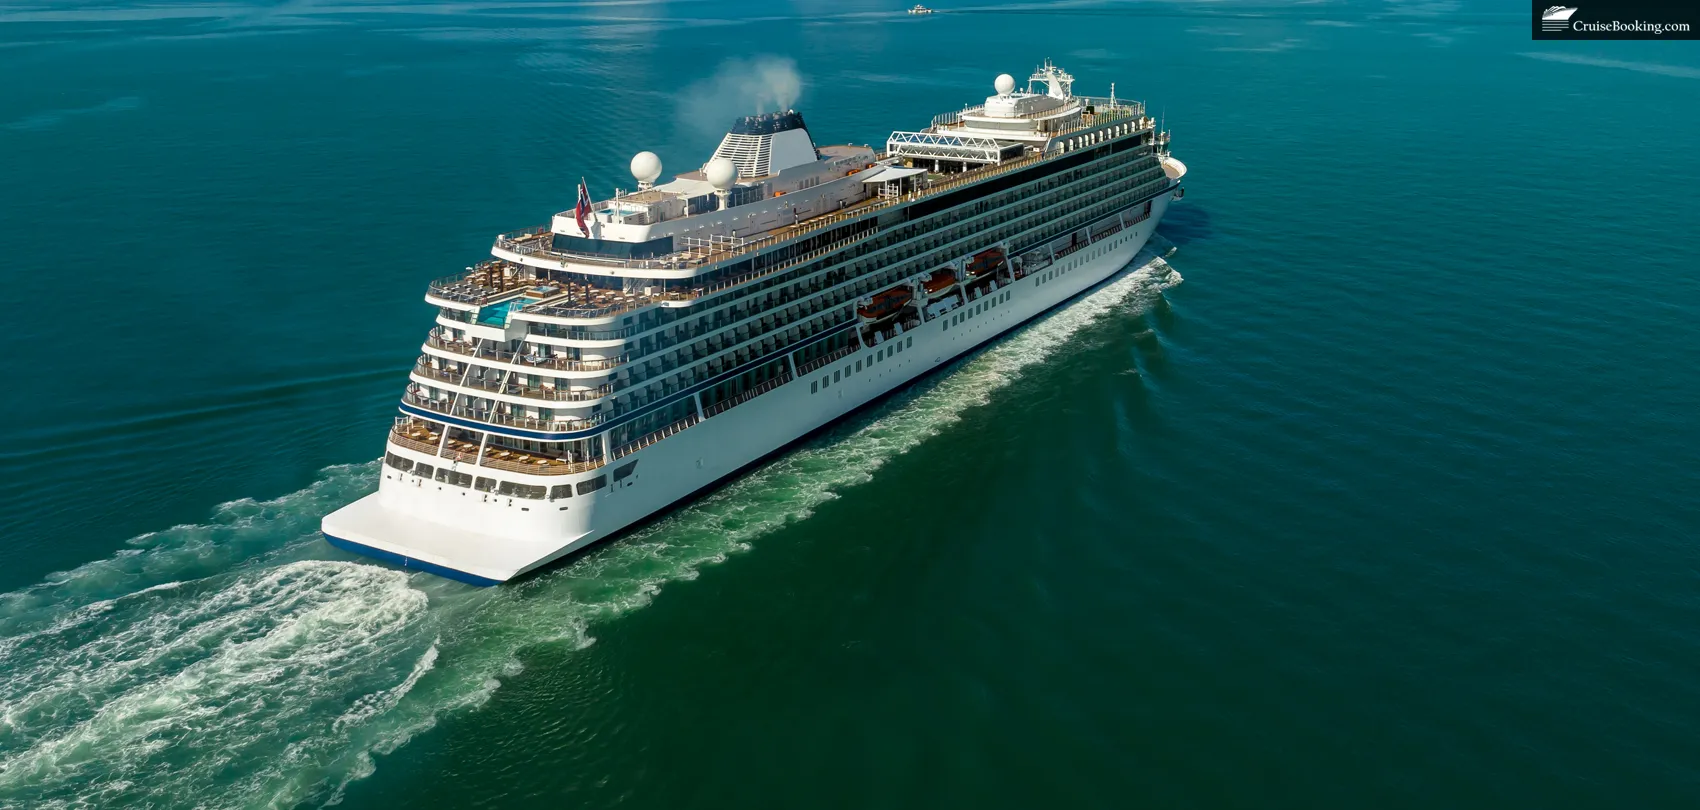 Viking Ocean Cruise